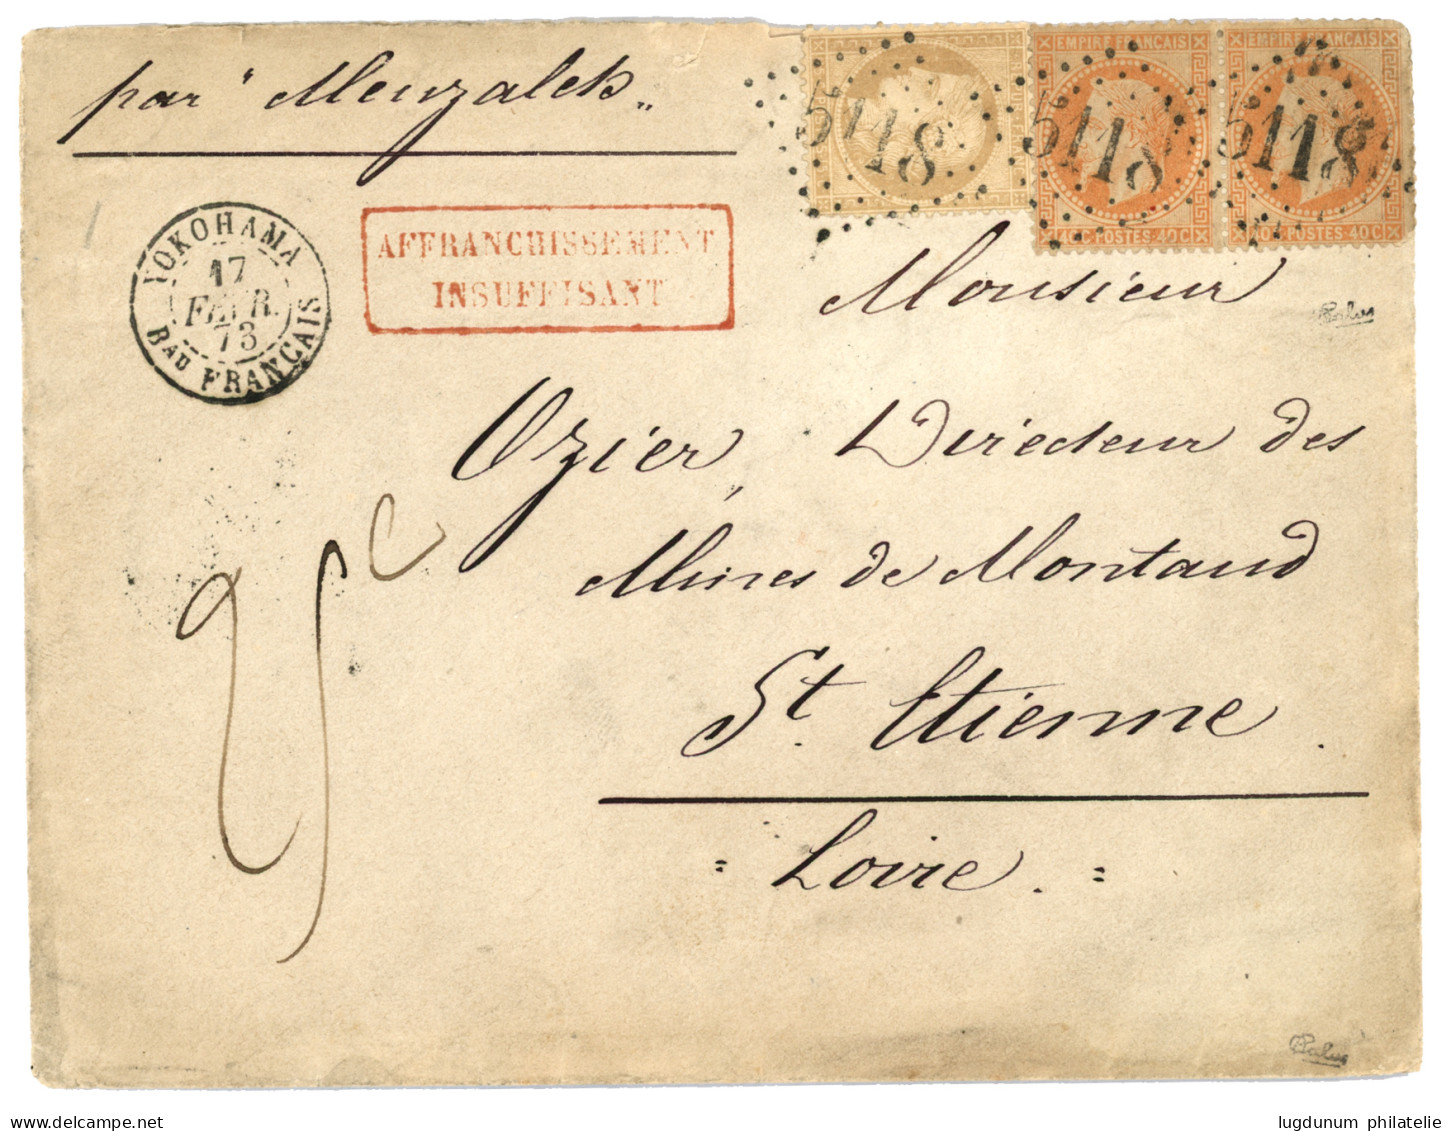 1873 Mixte 40c Lauré (x2) Pd + 15c CERES Obl. GC 5118 + YOKOHAMA Bau FRANCAIS + AFFRANCHISSEMENT INSUFFISANT + Taxe 25c  - 1849-1876: Classic Period